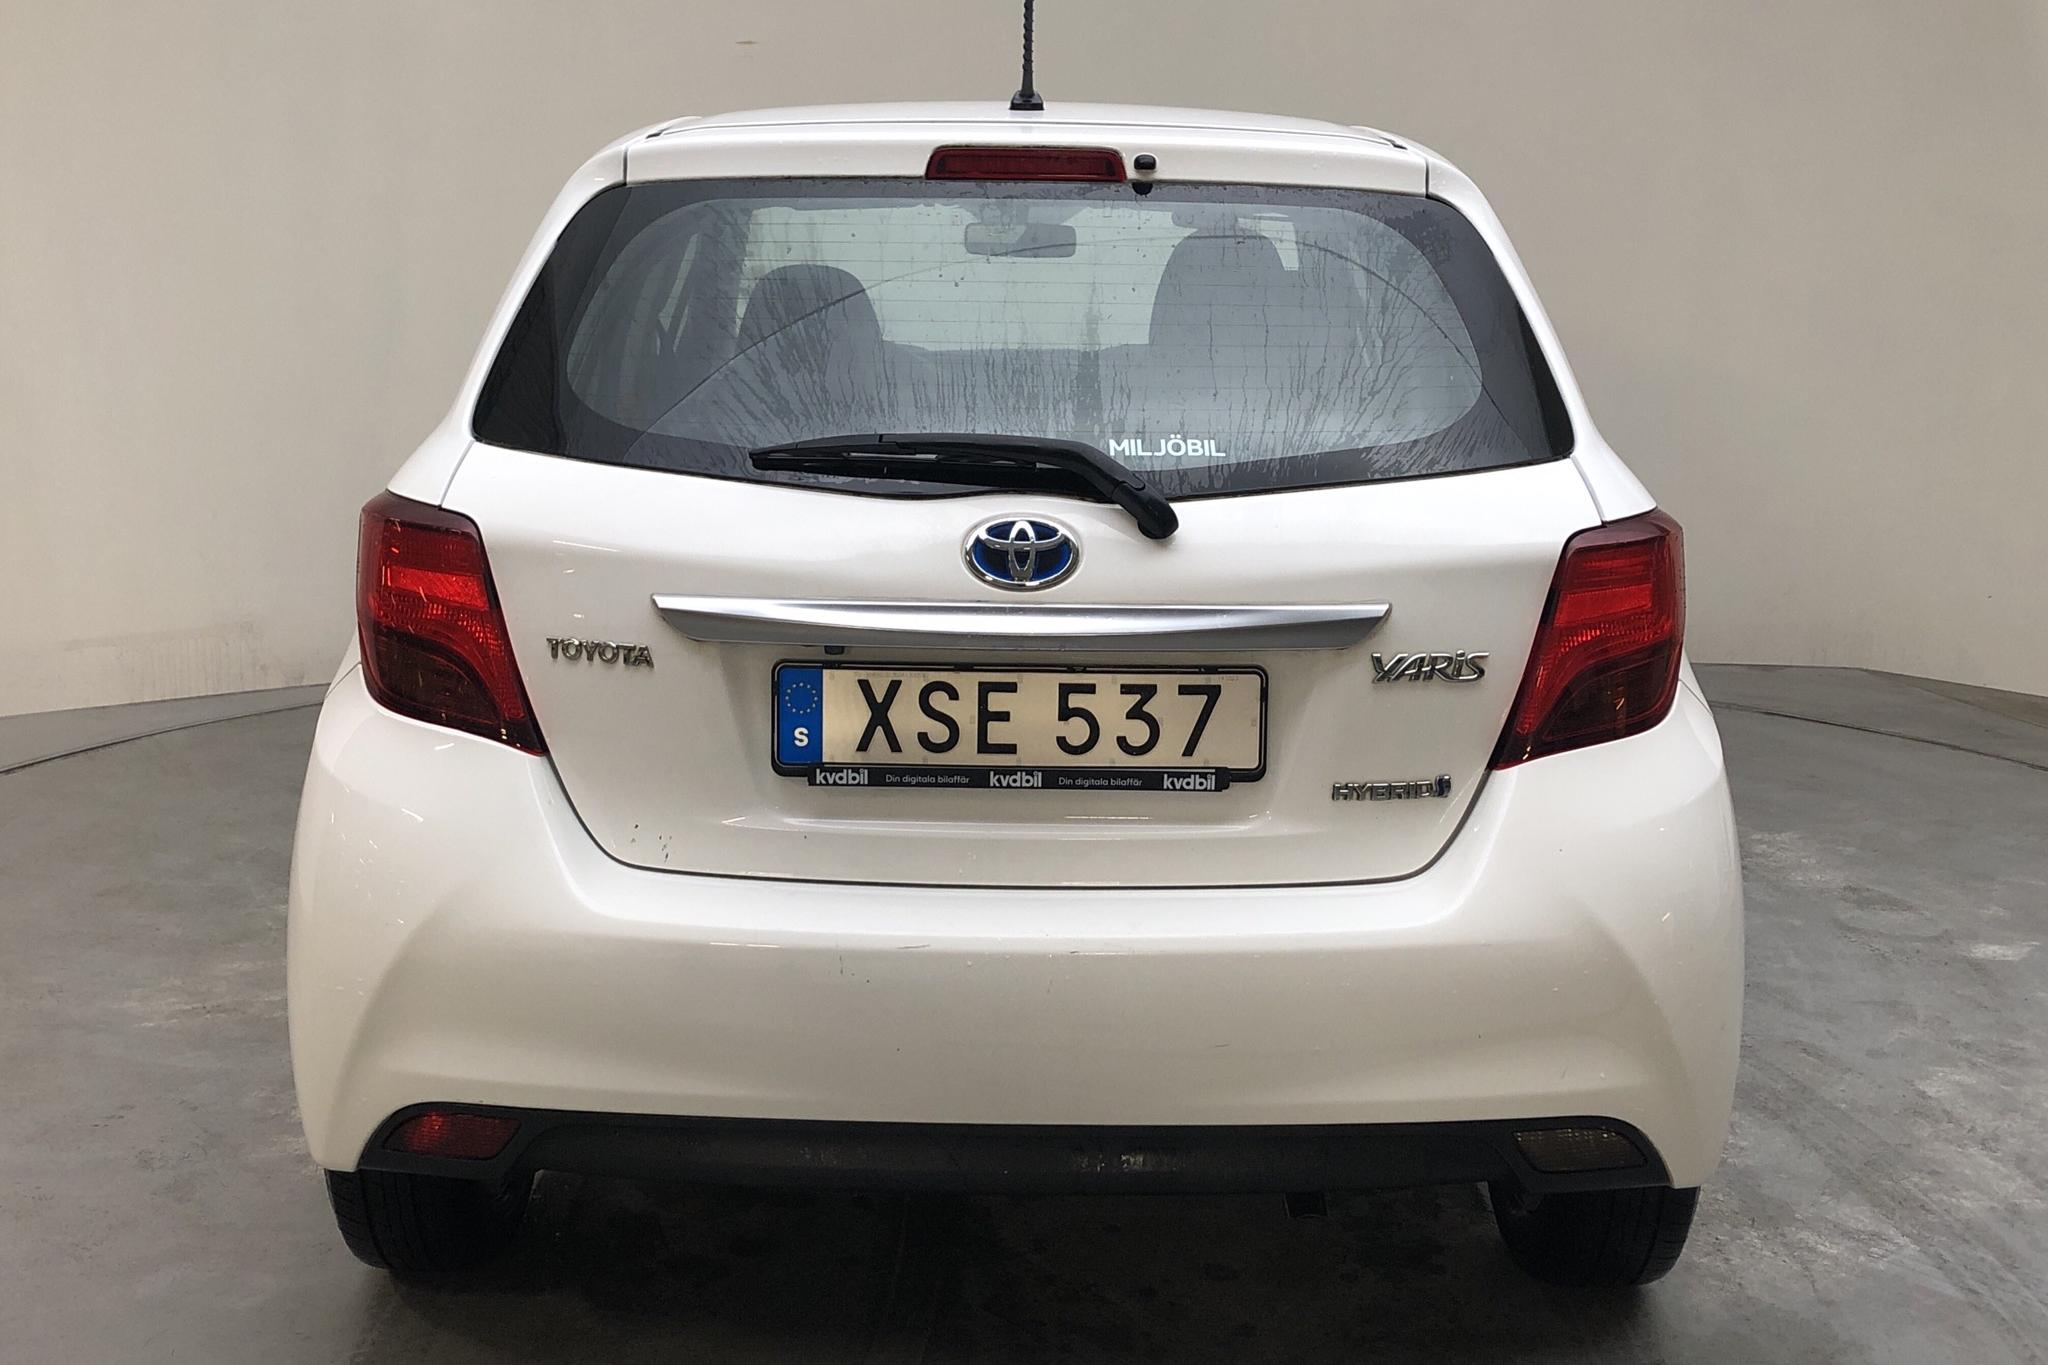 Toyota Yaris 1.5 HSD 5dr (75hk) - 98 880 km - Automatic - white - 2015